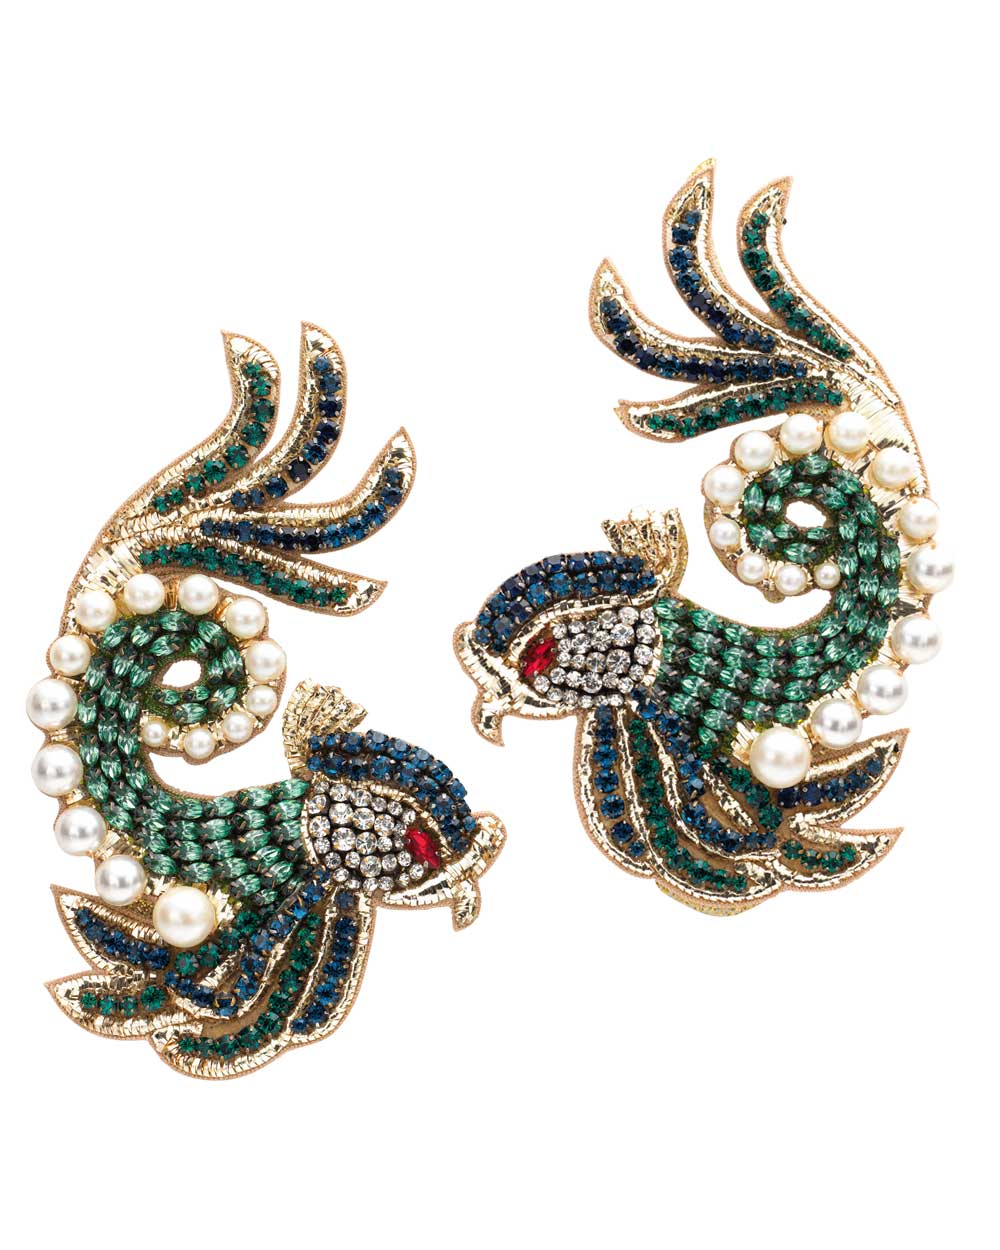 Gucci earrings, $1420